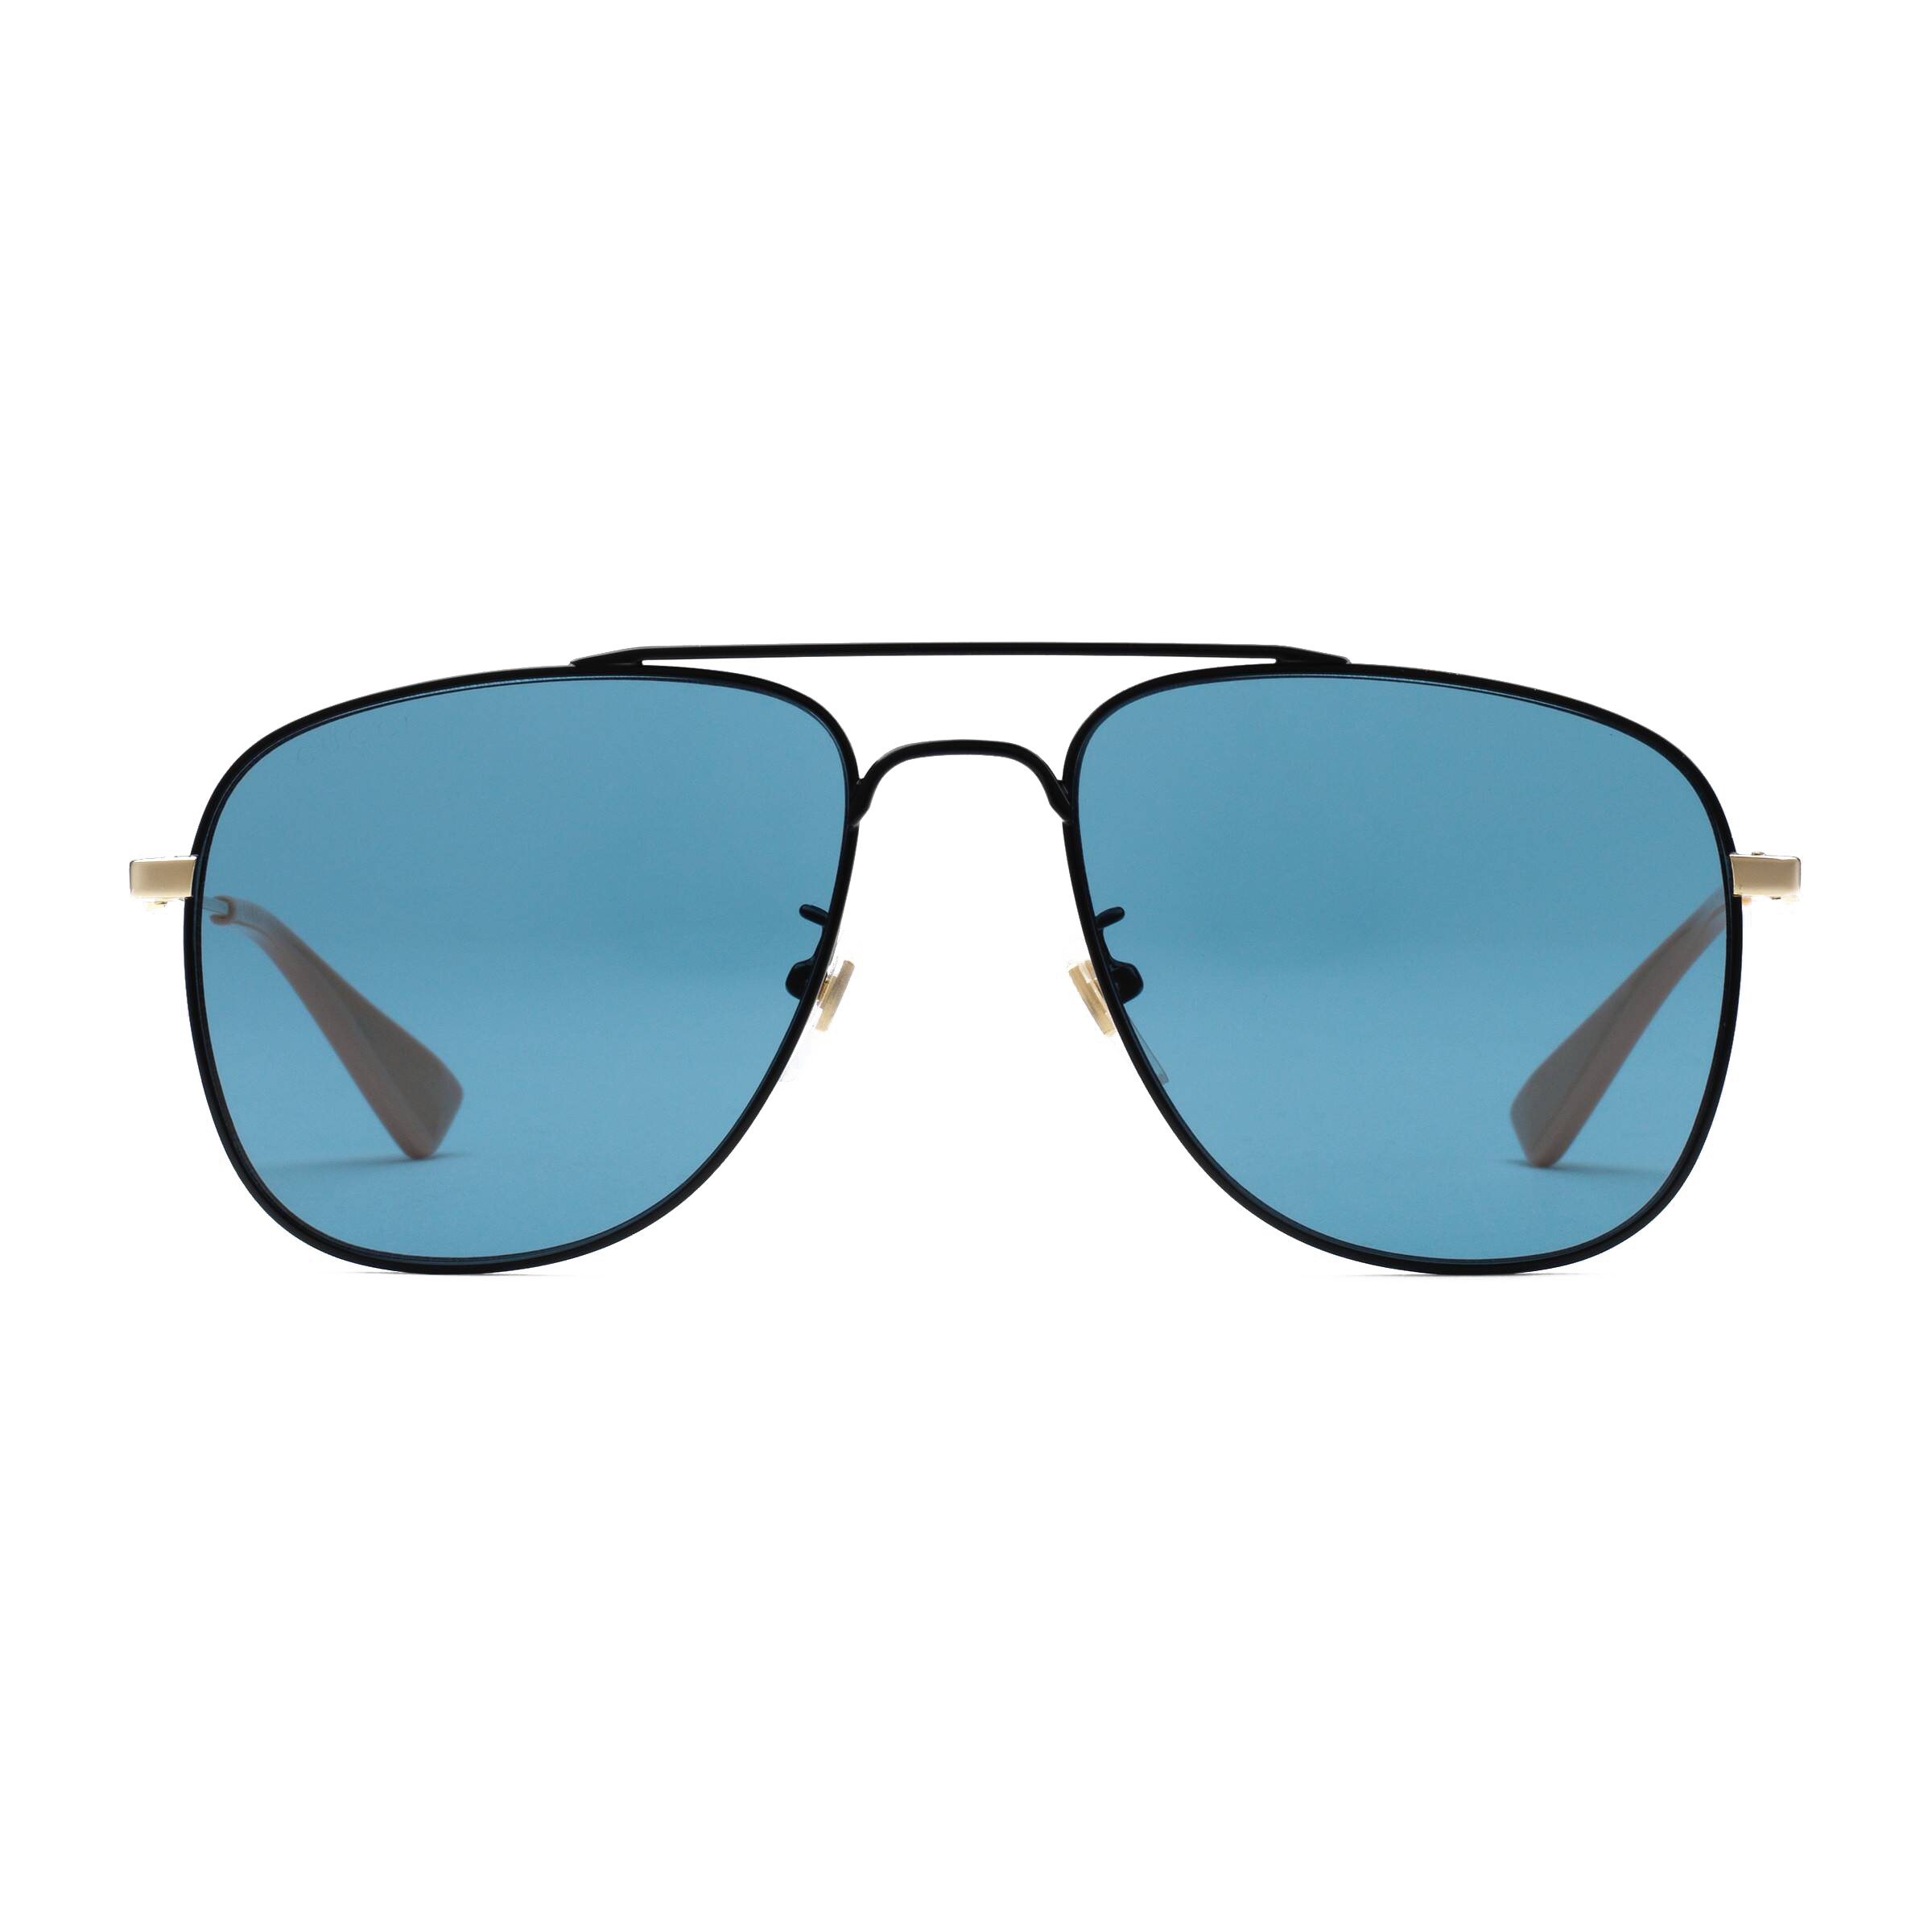 Gucci - Aviator Sunglassed - Black Blue 